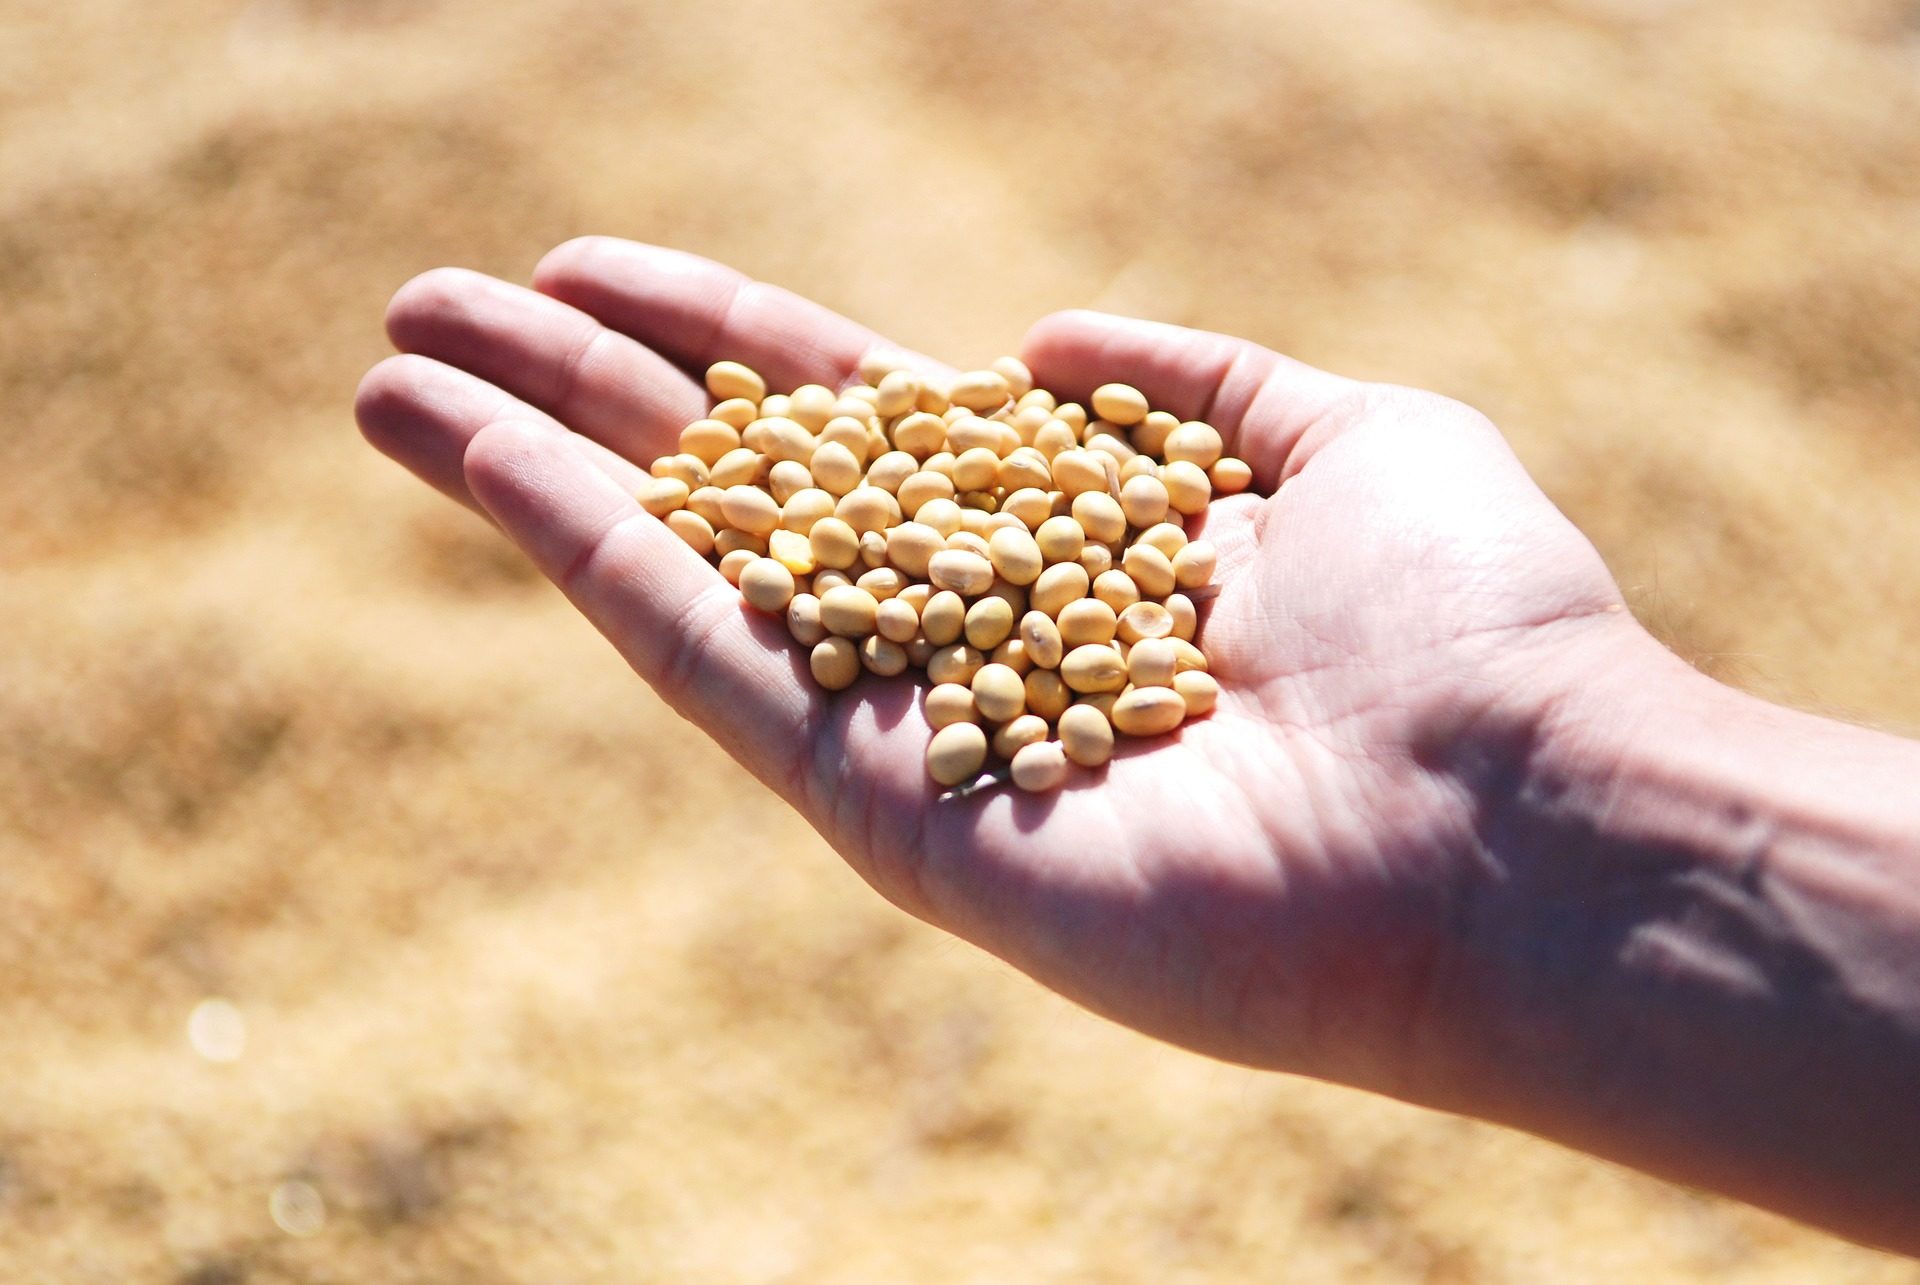 Le Saint-Siège fournira des semences aux populations rurales dans le besoin (Photo:Pixabay.com)